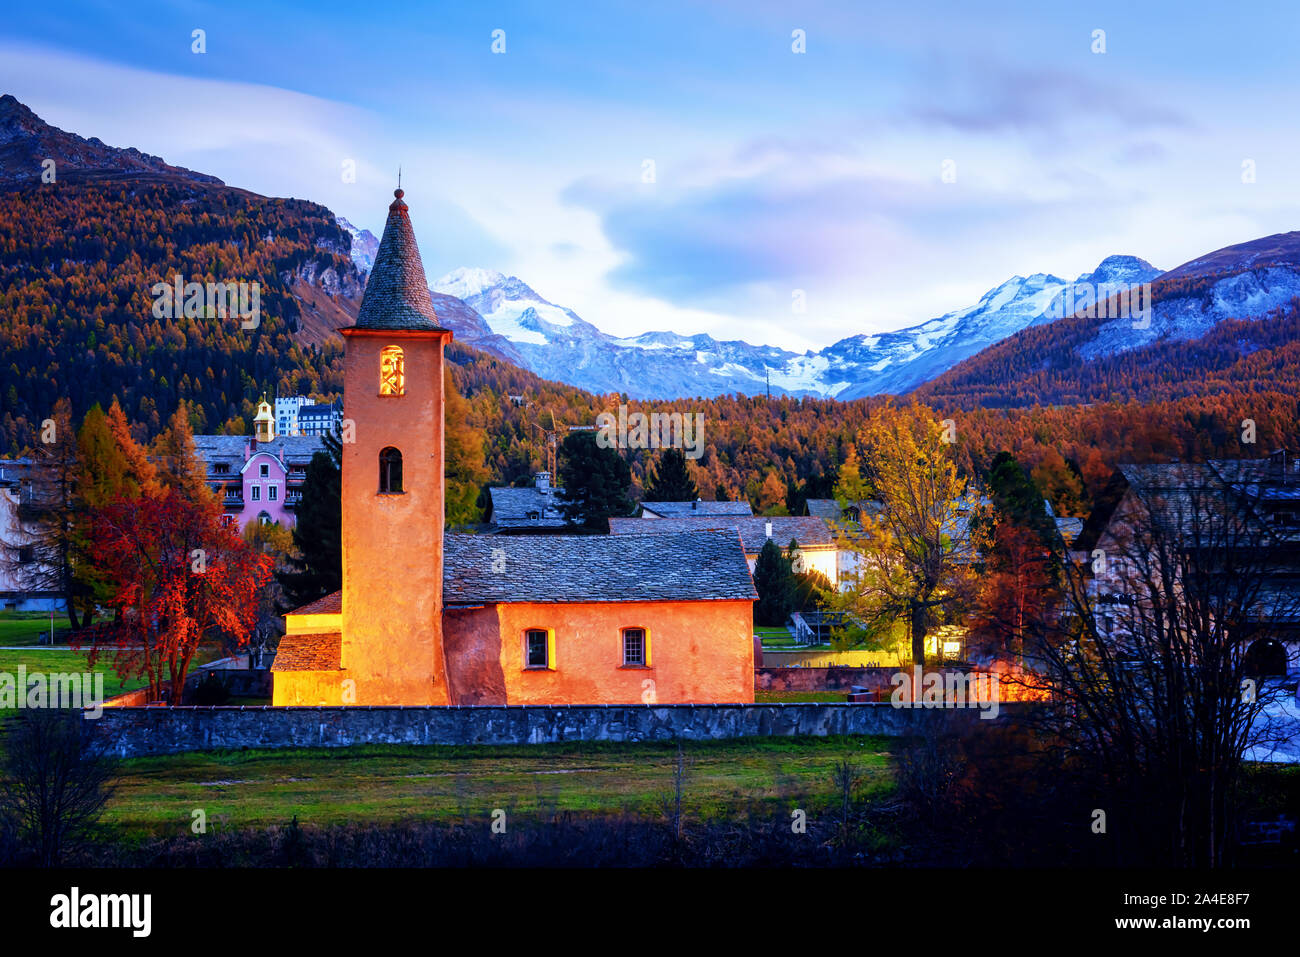 Alte Christentum Kirche in Sils Dorf (in der Nähe von See Sils) in den Schweizer Alpen. Rotes Licht auf Gebäude und die schneebedeckten Berge im Hintergrund. Schweiz, Maloja Region Oberengadin. Landschaftsfotografie Stockfoto